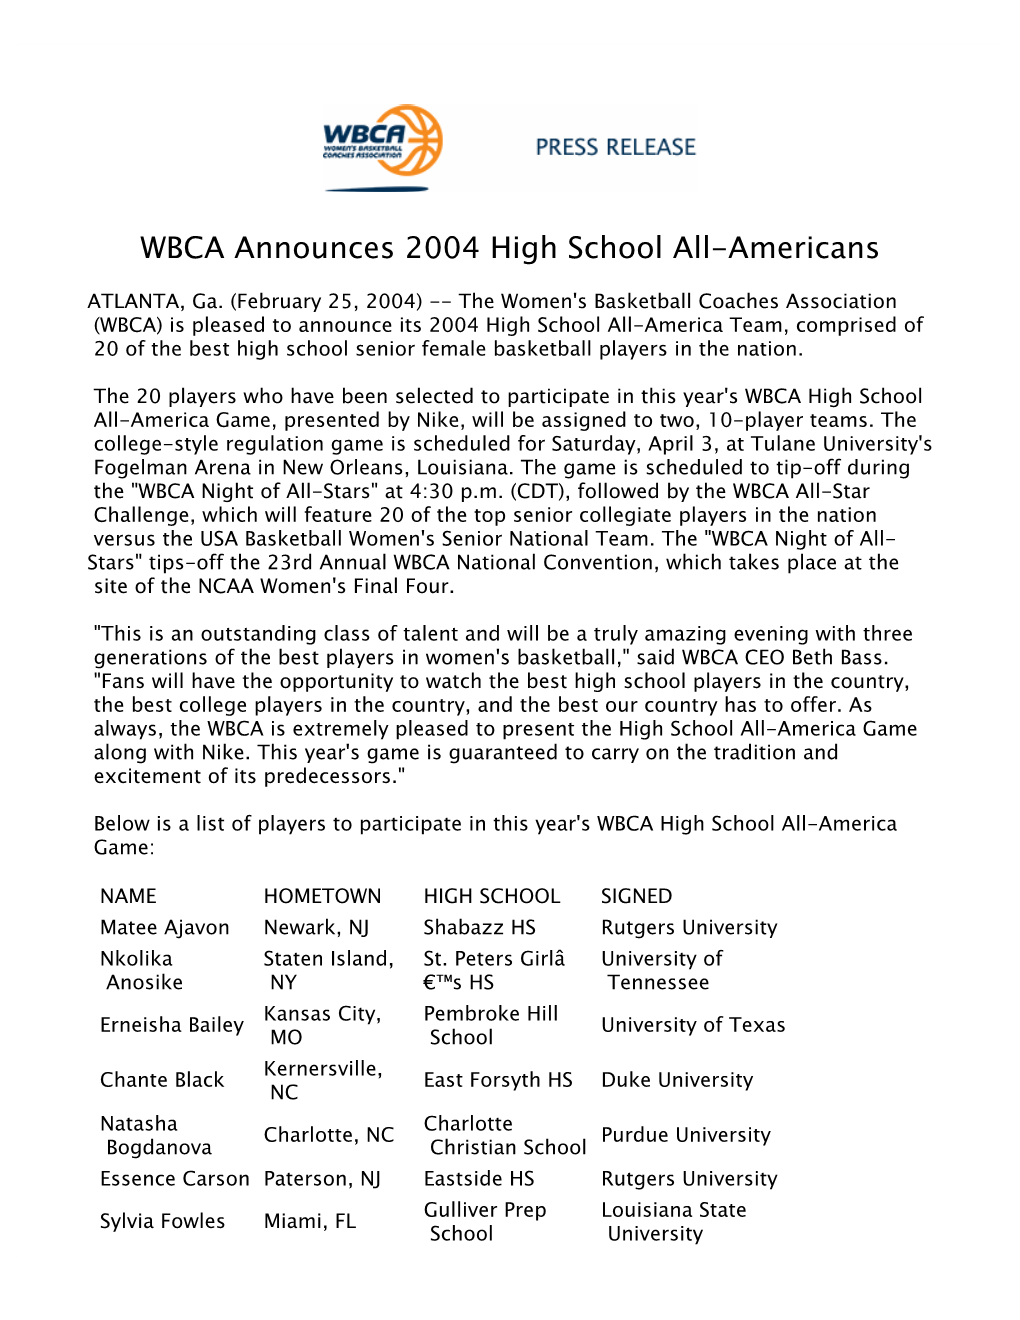 WBCA Announces 2004 High School All-Americans 2003-04 022504